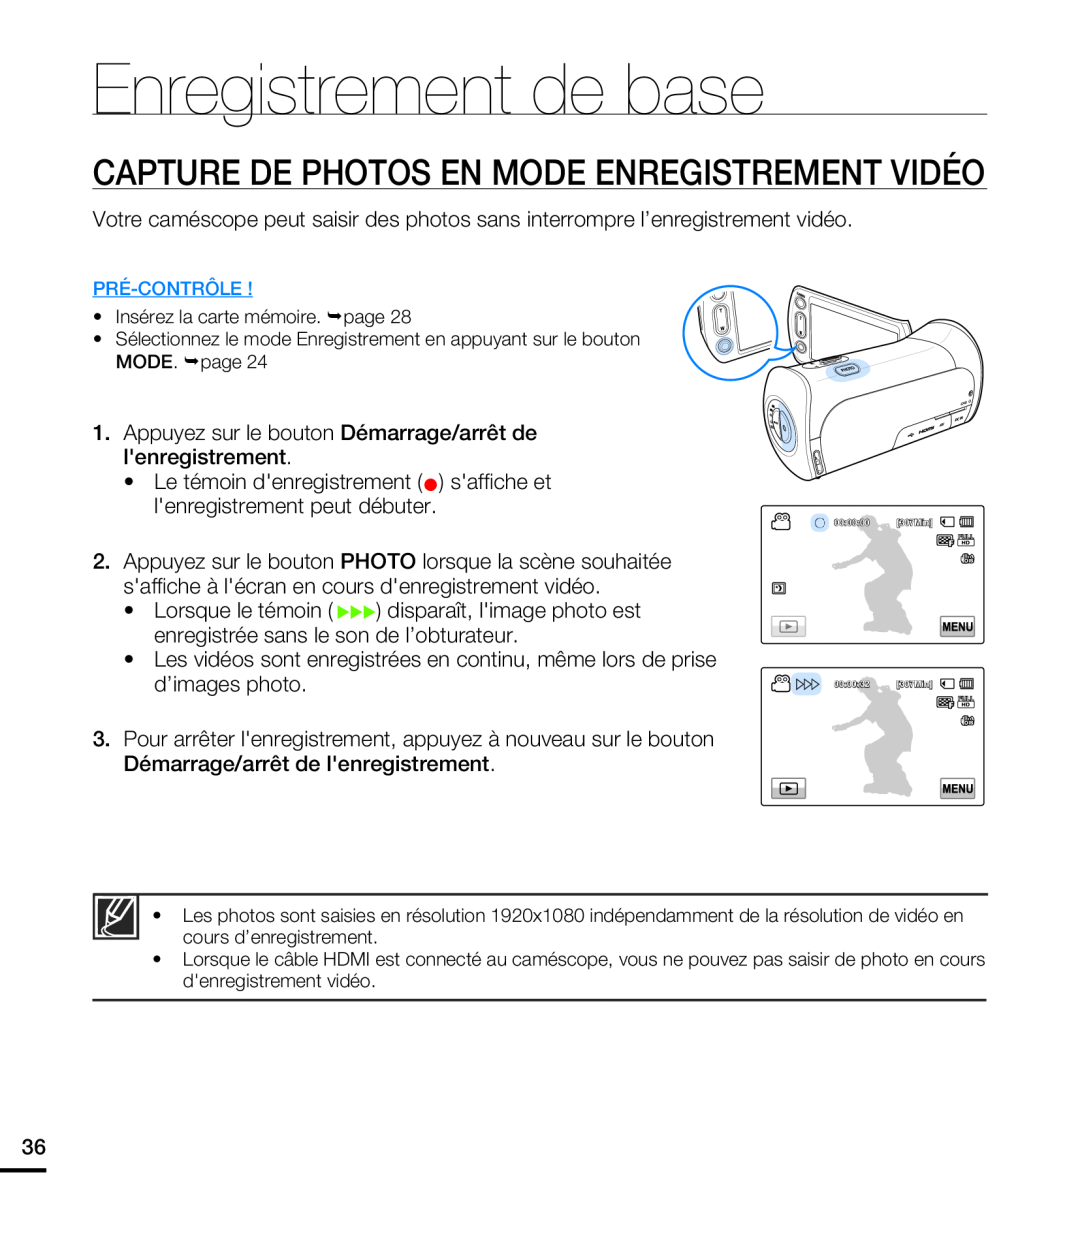 Samsung HMX-T10WP/XEU, HMX-T10WP/EDC, HMX-T10OP/EDC Capture De Photos En Mode Enregistrement Vidéo, Enregistrement de base 